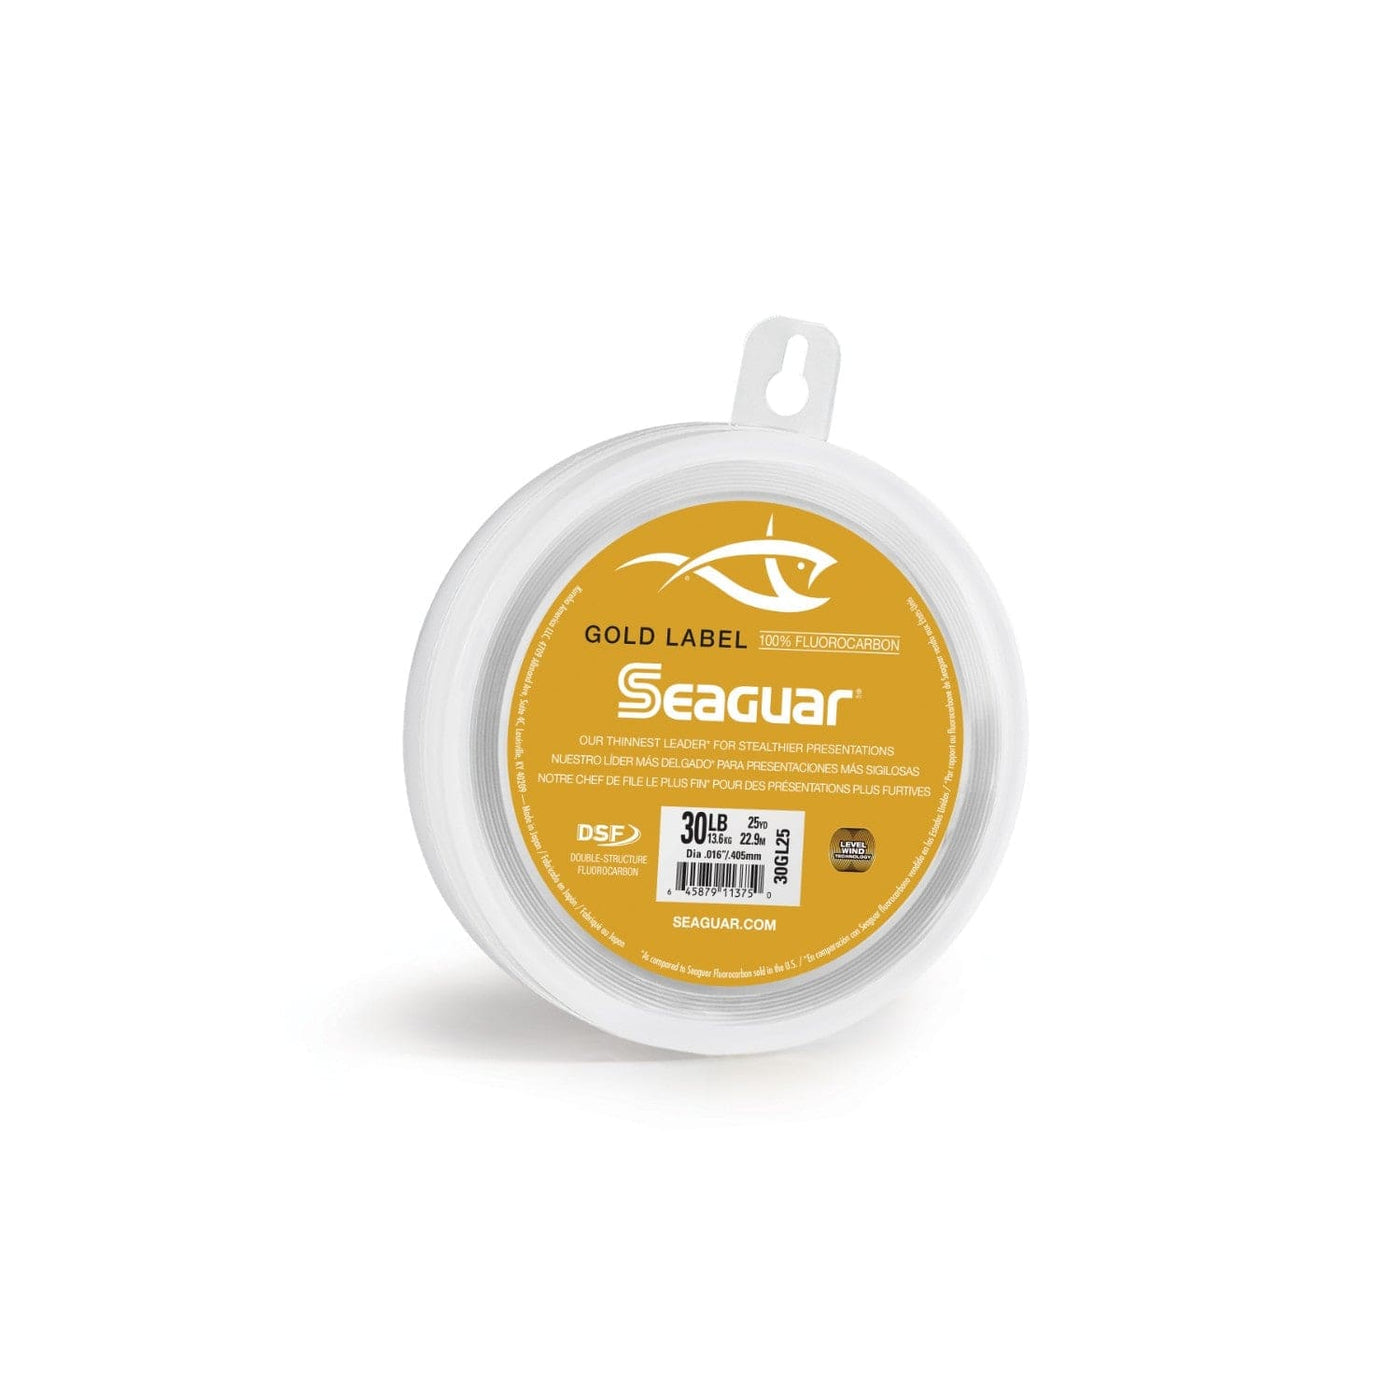 Seaguar Seaguar Gold Label 25 15GL25 Flourocarbon Leader Fishing